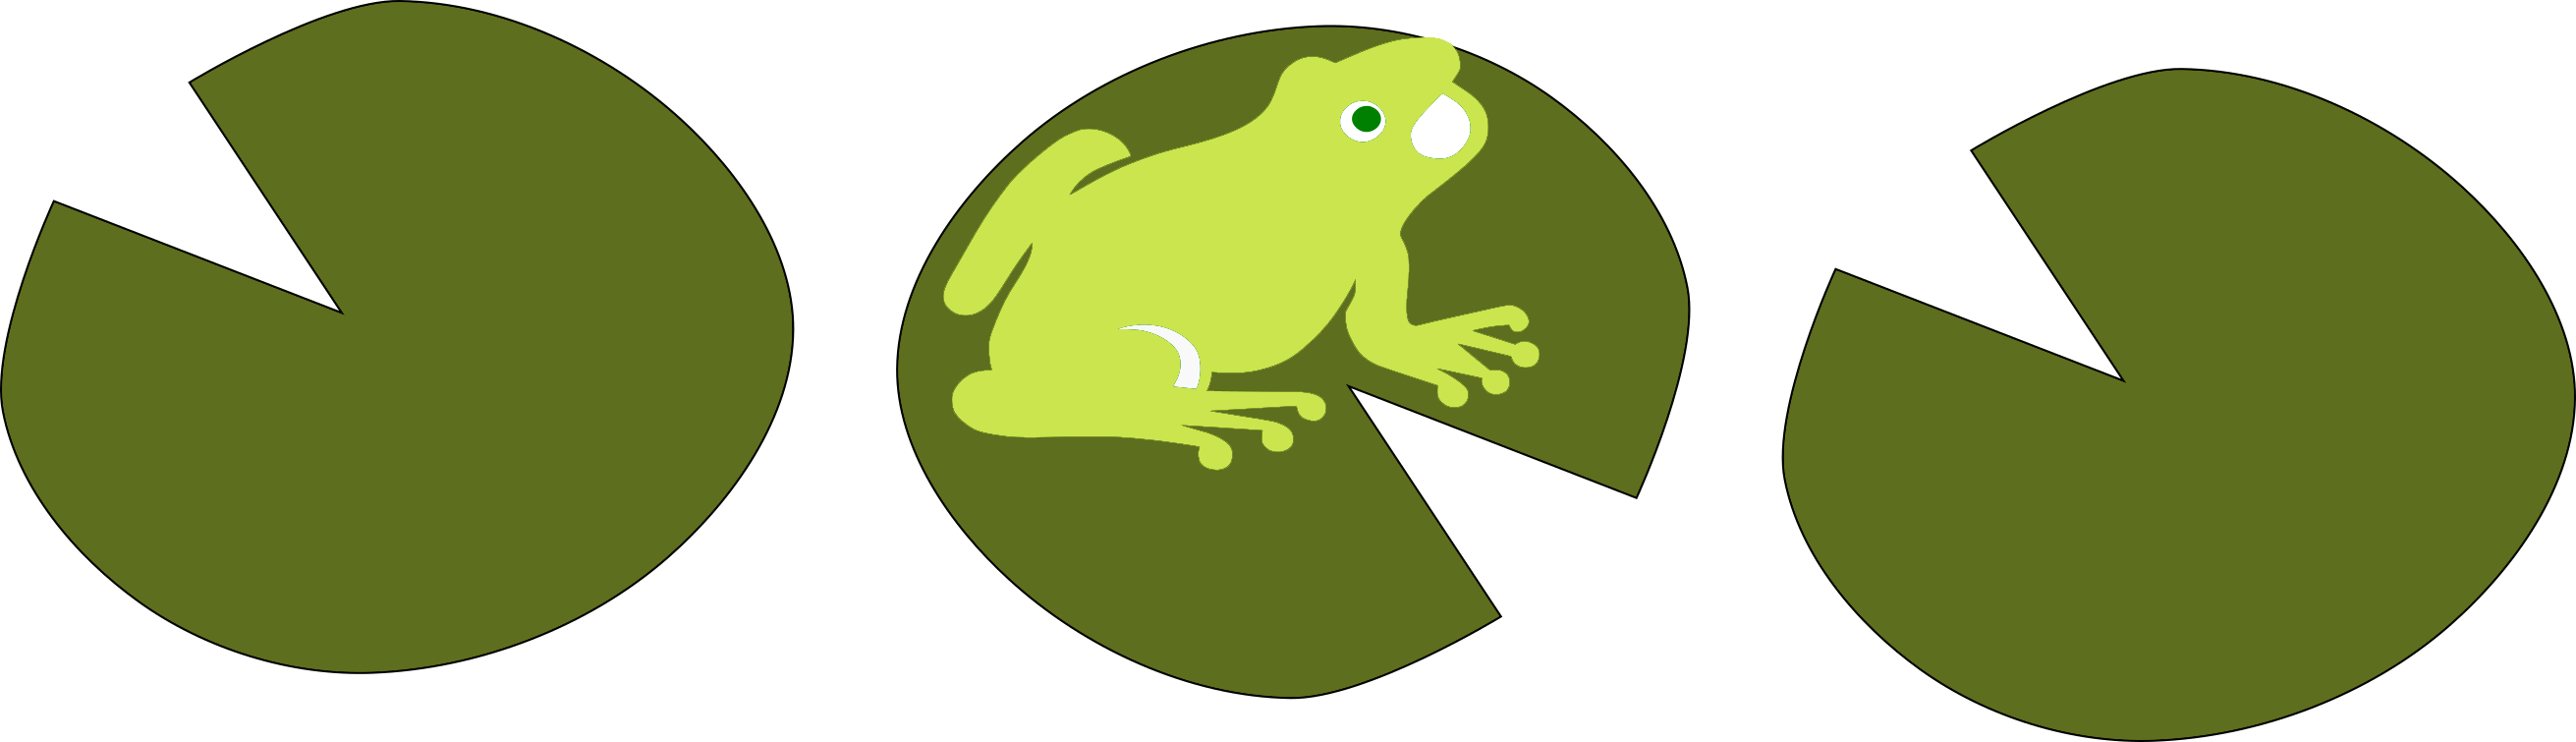 Image représentant 3 nénufares en ligne dont une grenouille sur celle du milieu